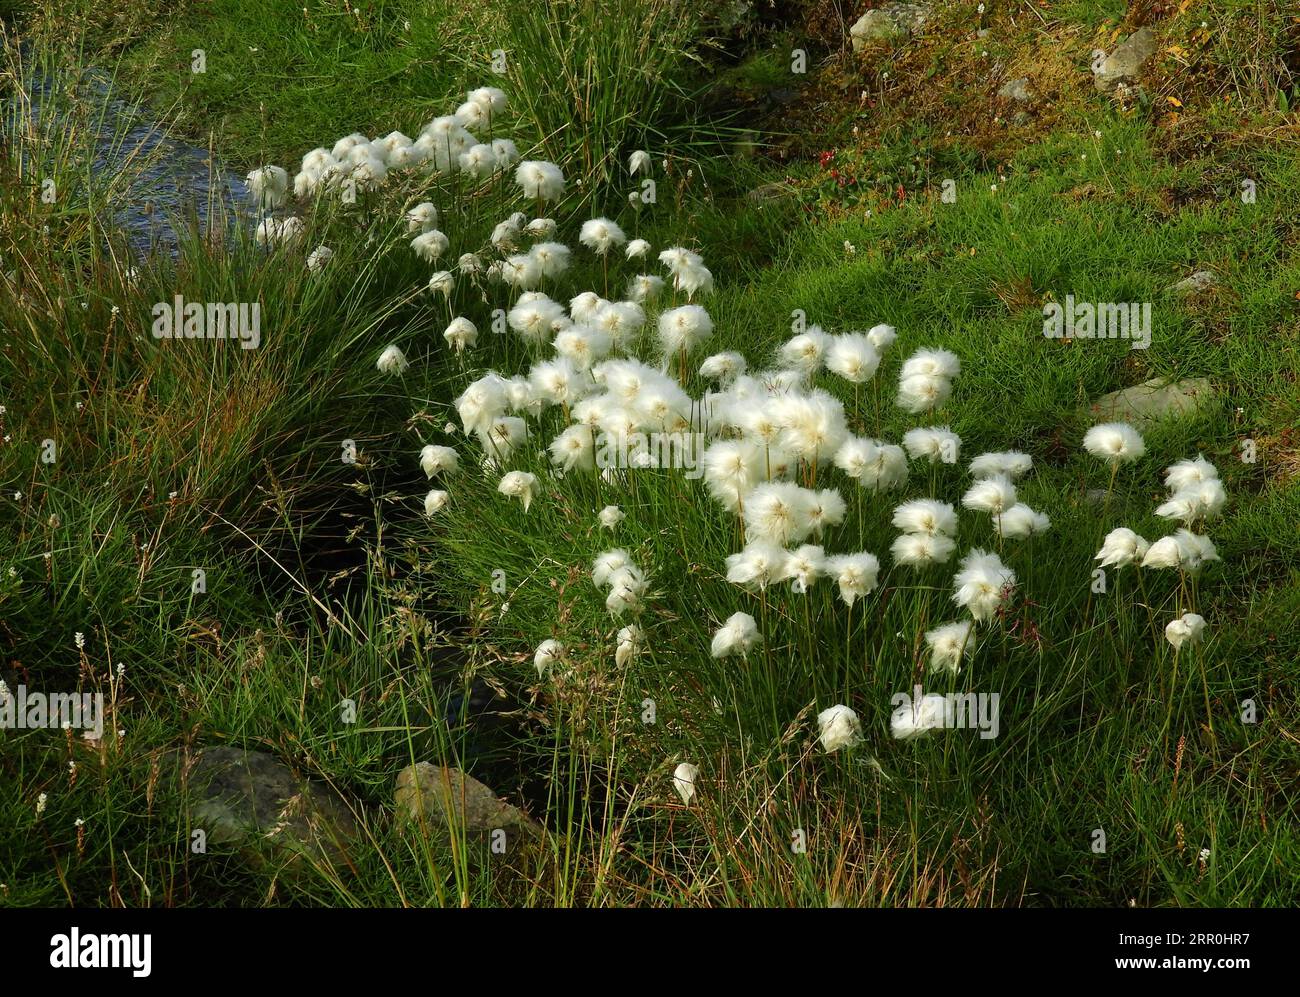 jolies fleurs blanches de coton arctique dans la toundra des prairies à longyearbyen sur l'île de spitzberg, svalbard, norvège Banque D'Images